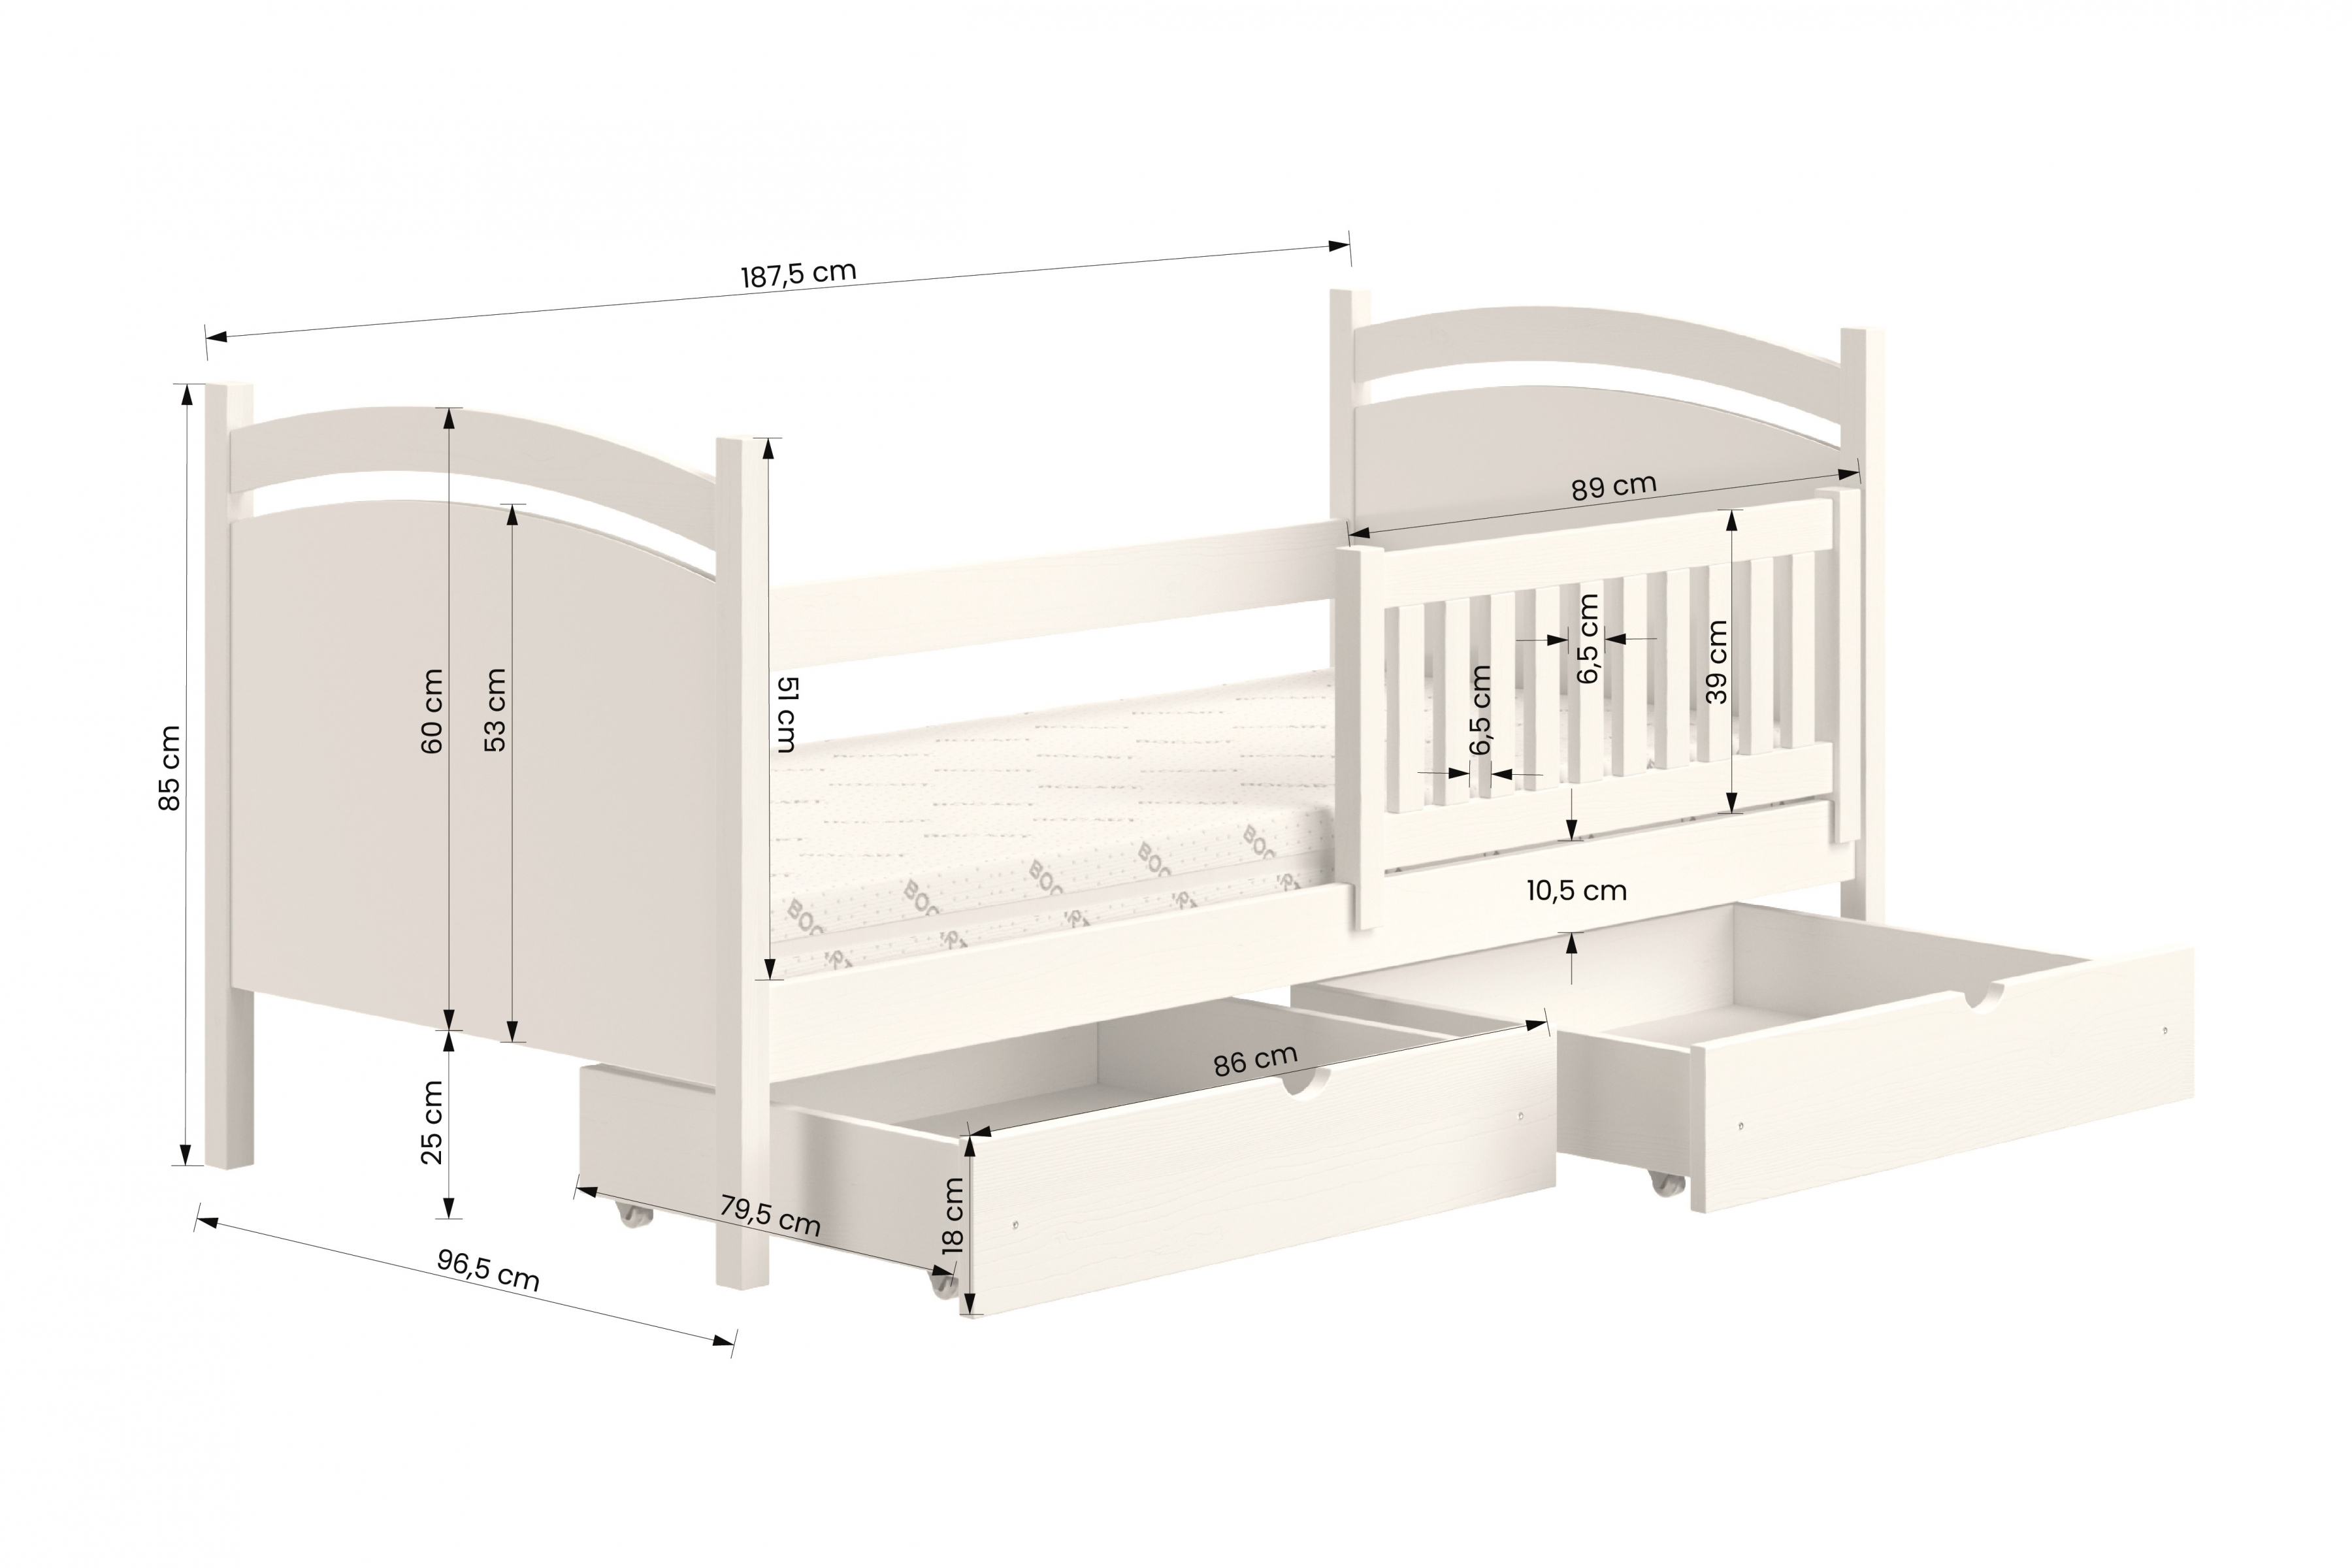 postel dětské s tabulí na suché mazání Amely - Barva šedý, rozměr 90x180 postel dzieciece z tablica suchoscieralna Amely - Rozměry